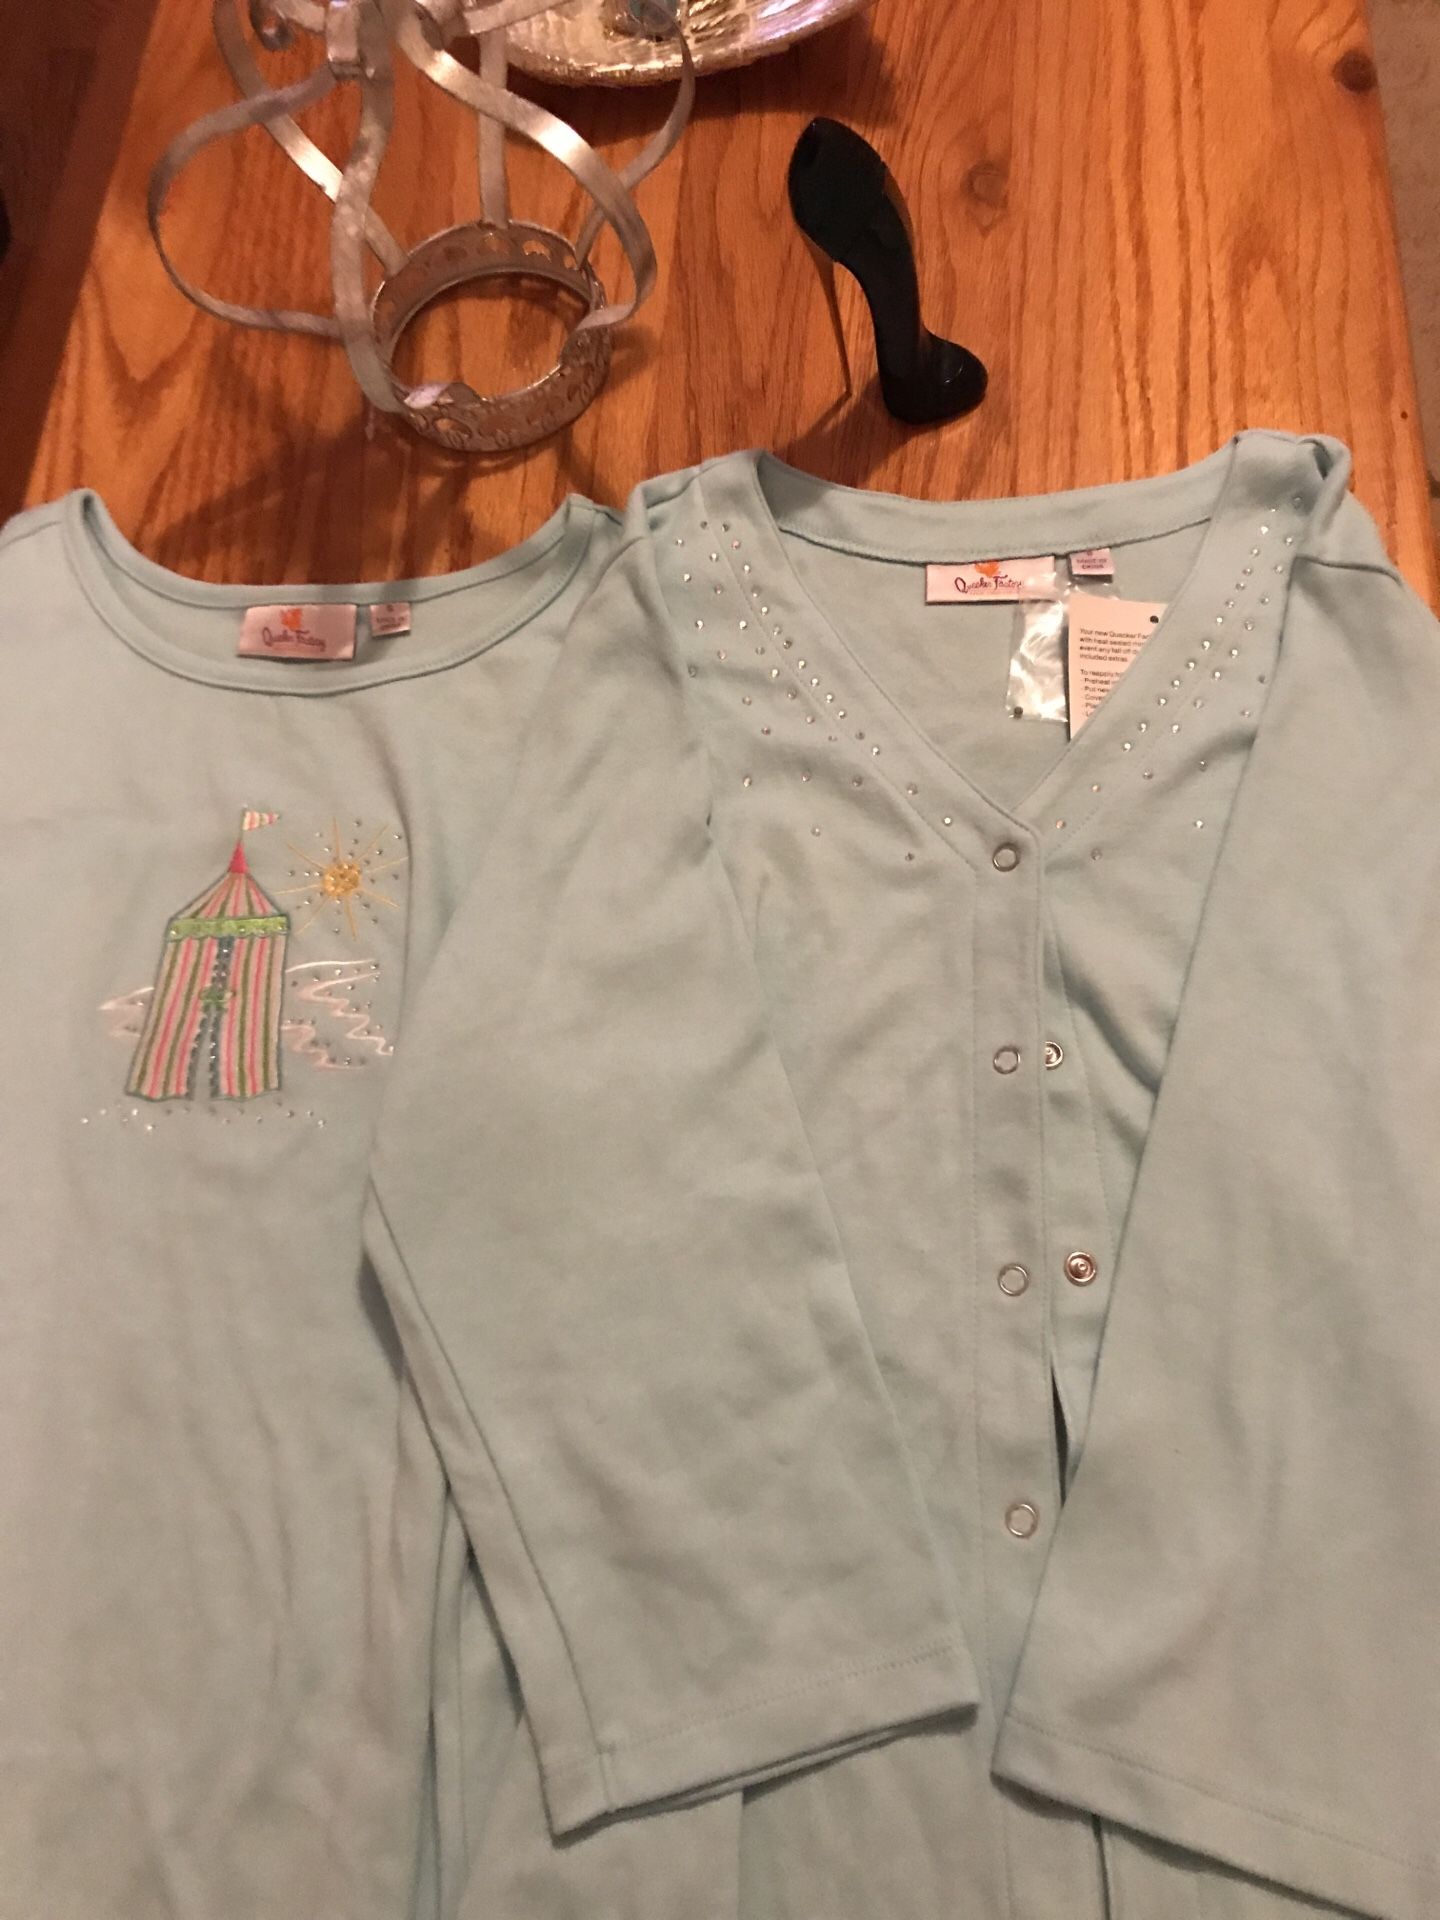 Pretty 2 piece Shirt Set with Jacket